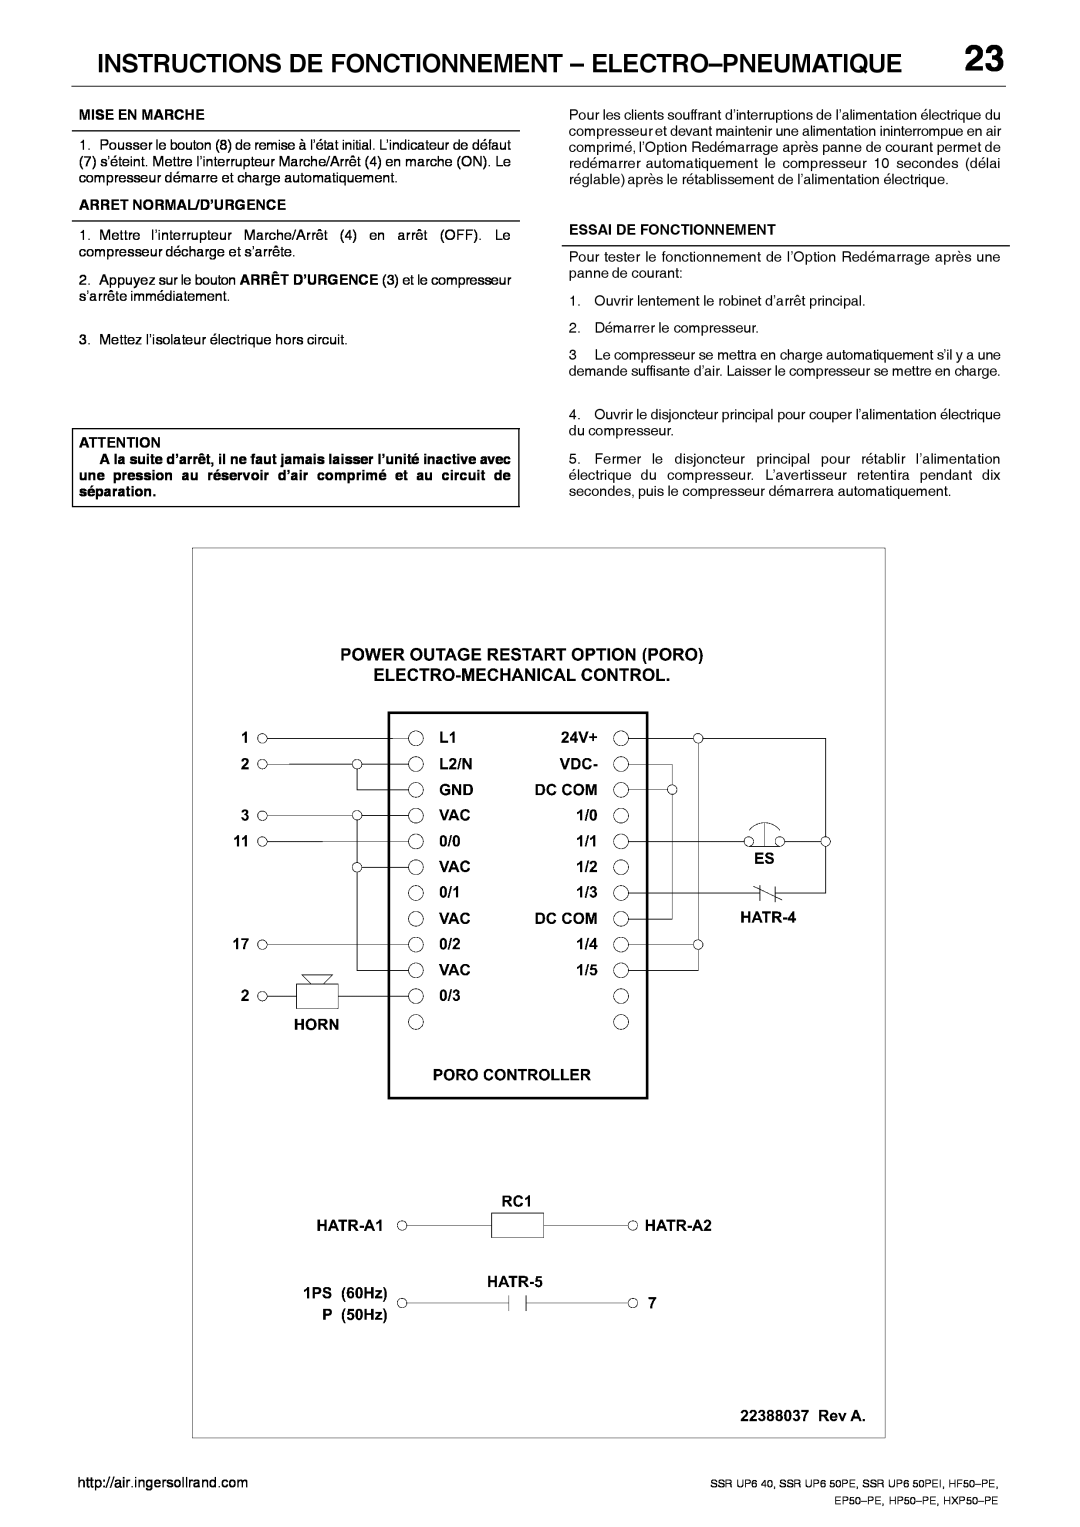 Ingersoll-Rand SSR UP6 50PE Instructions De Fonctionnement - Electro-Pneumatique, Mise En Marche, Arret Normal/D’Urgence 